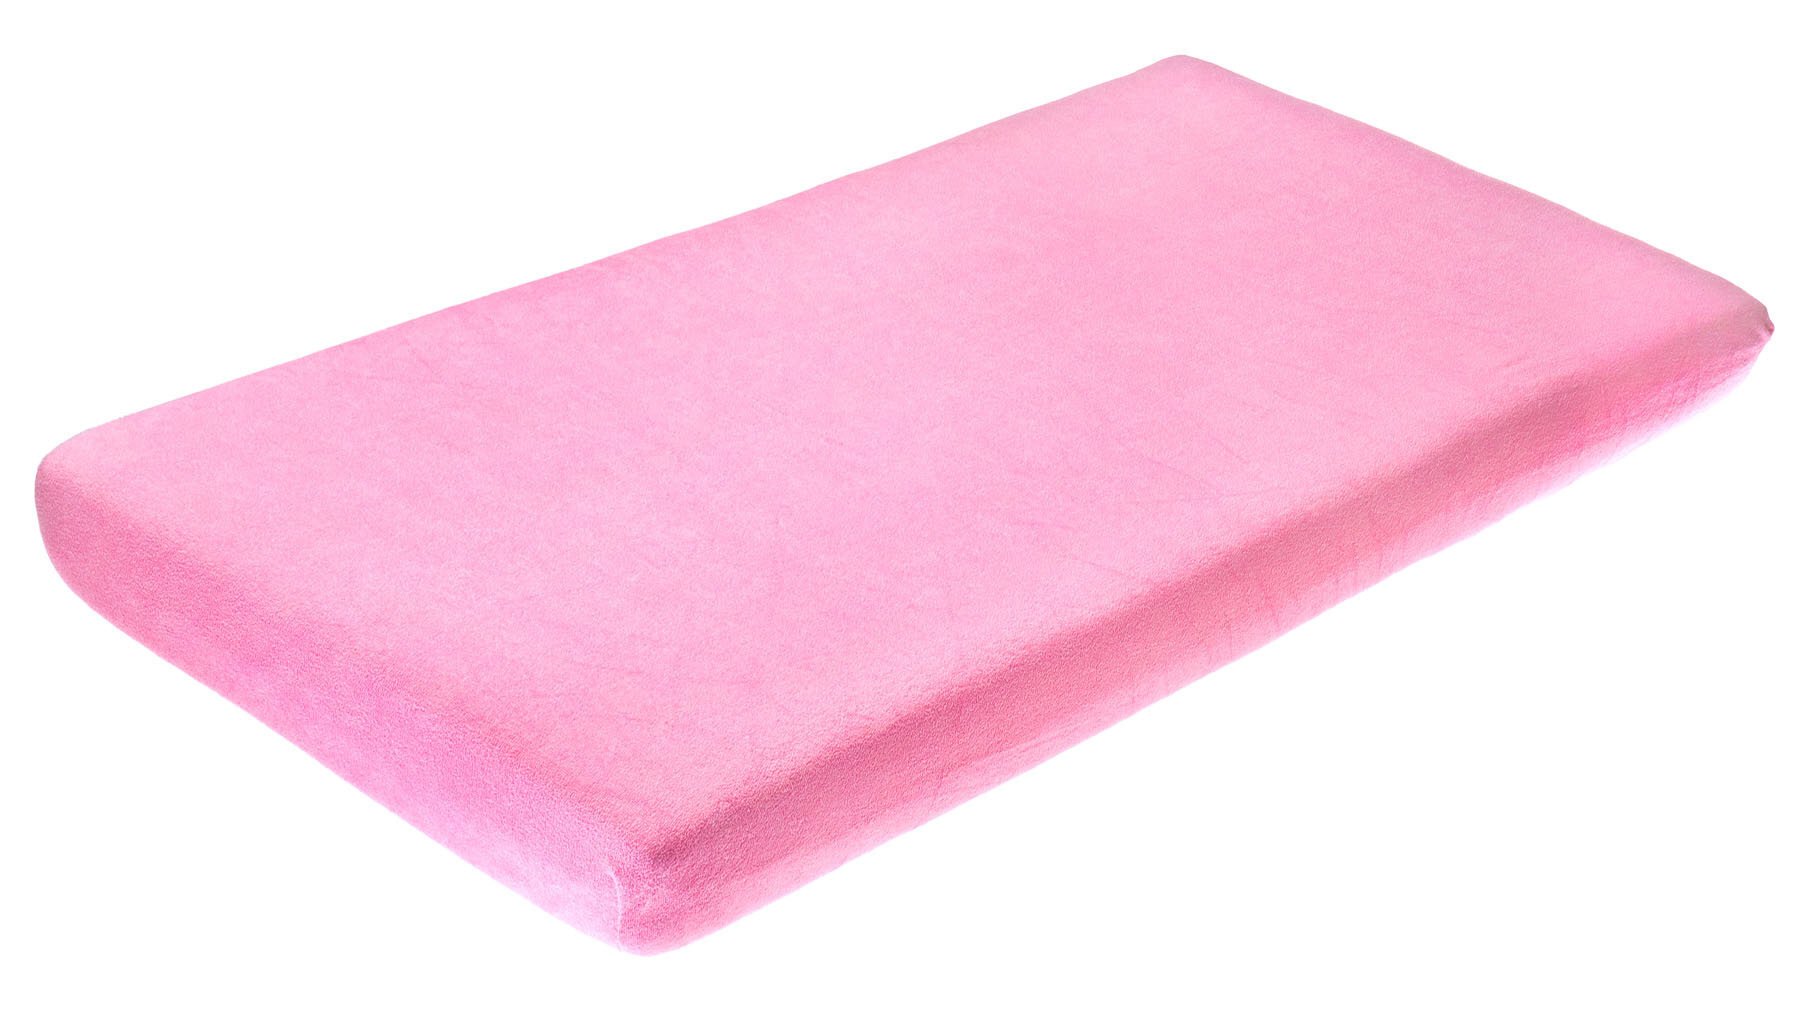 Paklodė su guma frotte, rožinė, 120x60, Sensillo, 2145 kaina ir informacija | Paklodės | pigu.lt